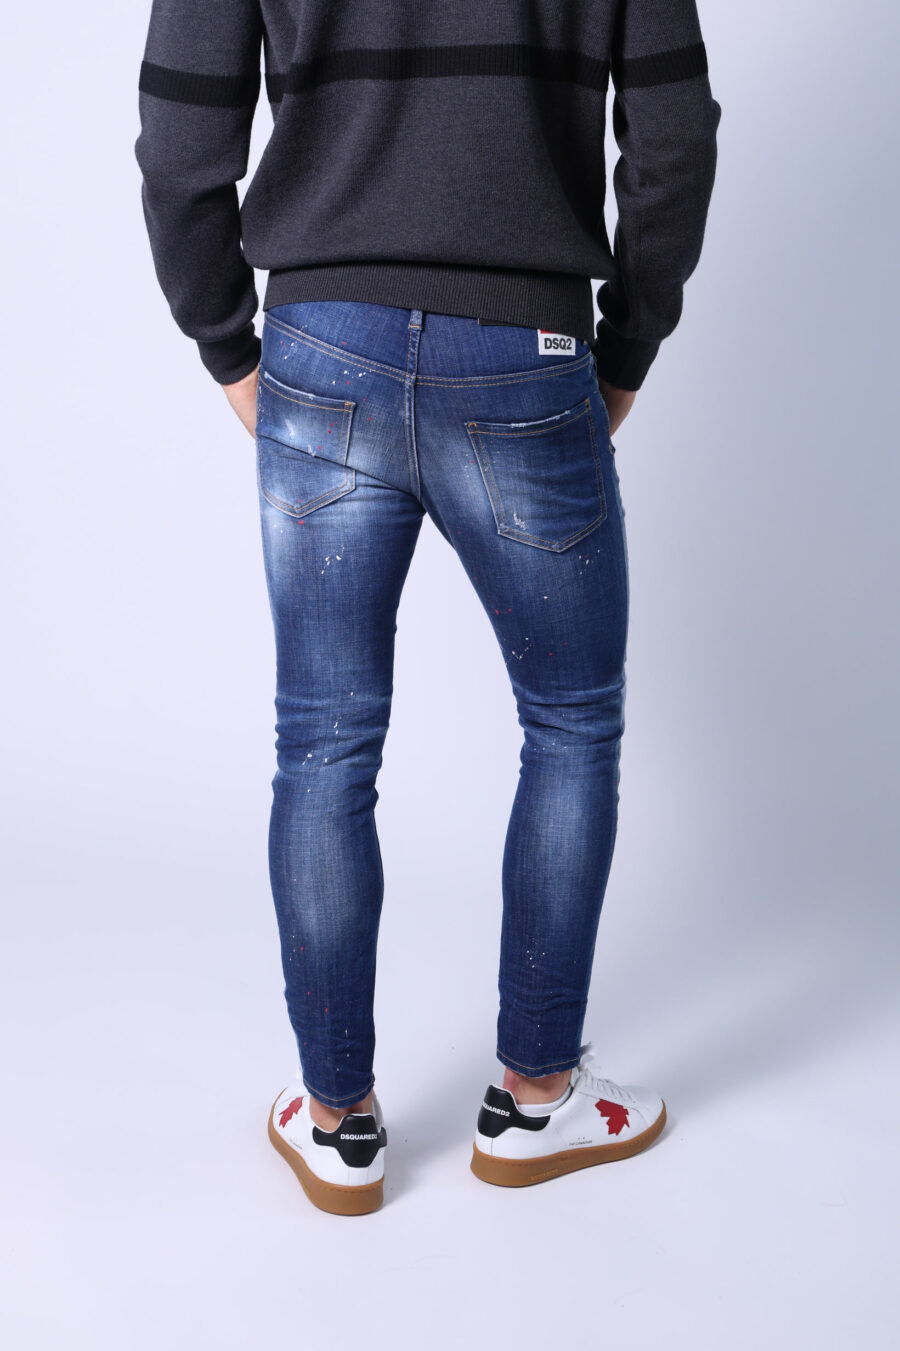 Halbgetragene blaue "Skater"-Jeans mit Farbe und Rissen - Ohne Titel Katalog 05393